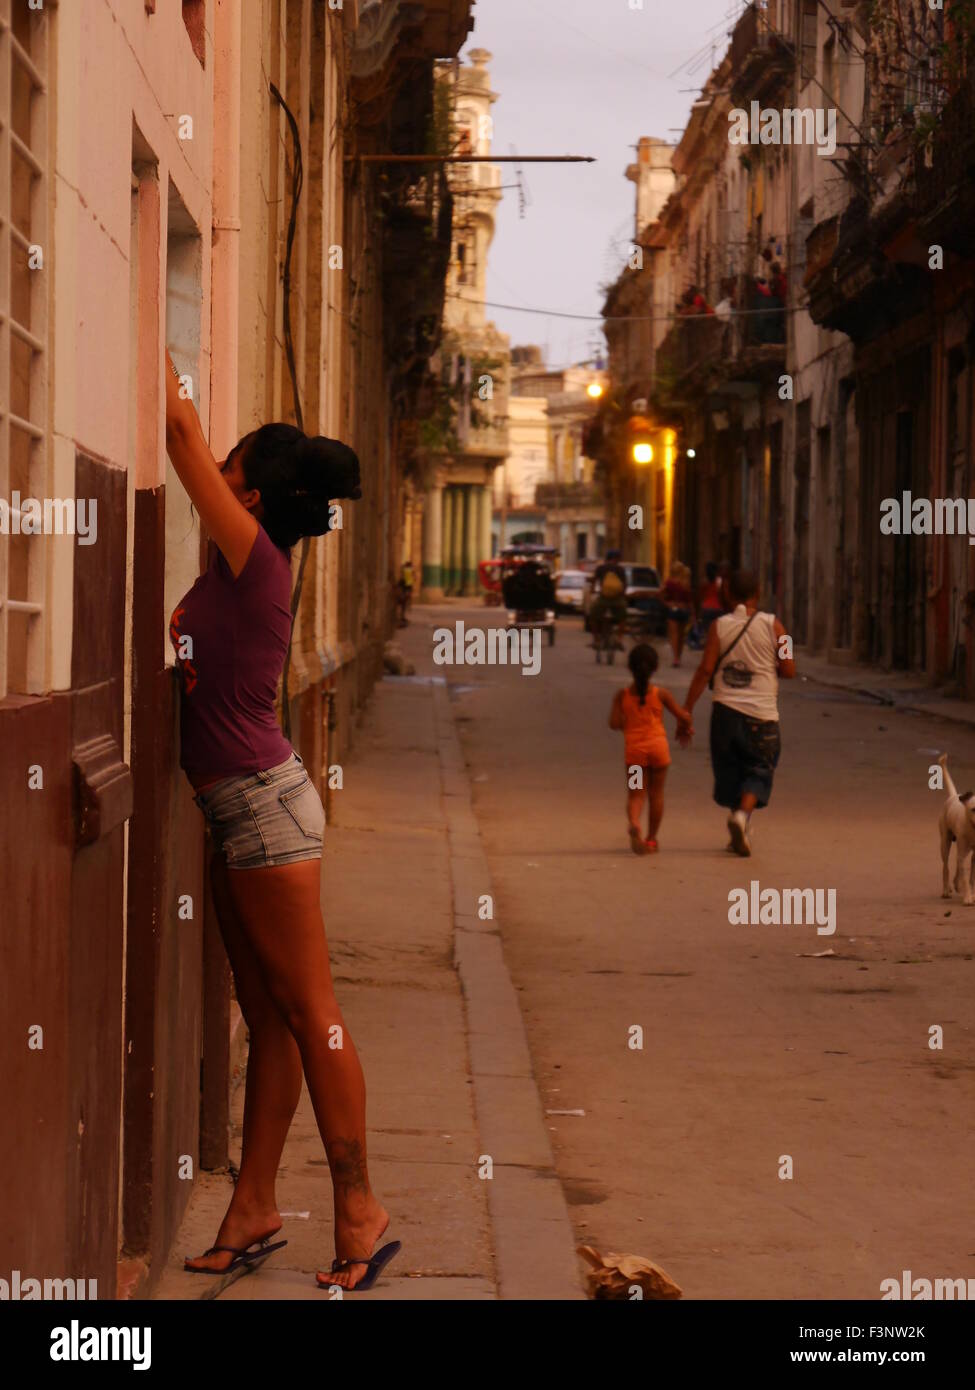 Havana girl in streetview Stock Photo